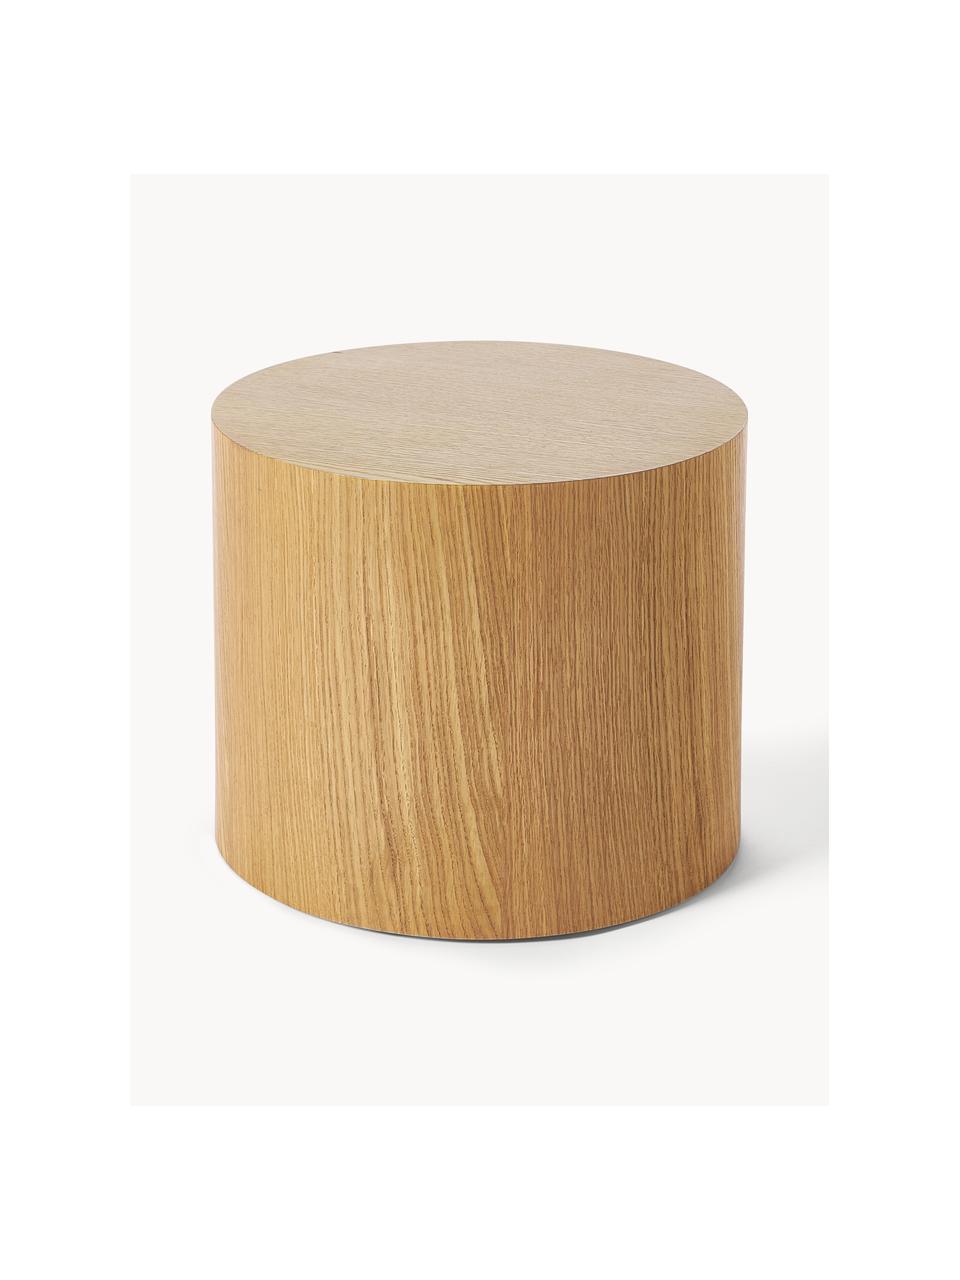 Sada dřevěných konferenčních stolků Dan, 2 díly, MDF deska (dřevovláknitá deska střední hustoty) s dubovou dýhou, Dubové dřevo, Sada s různými velikostmi